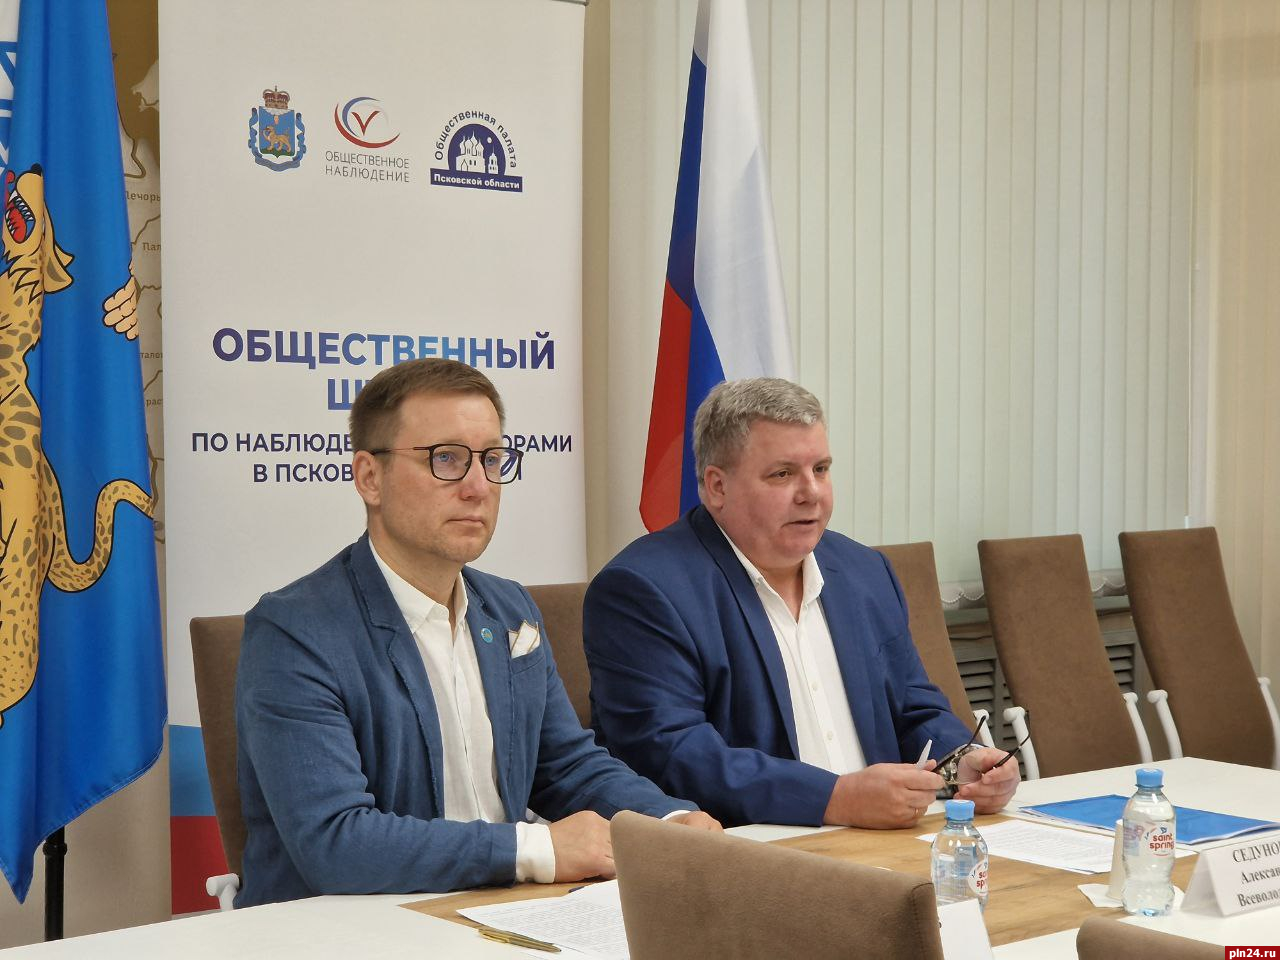 Выборы в Псковской области пройдут открыто и легитимно - Игорь Сопов